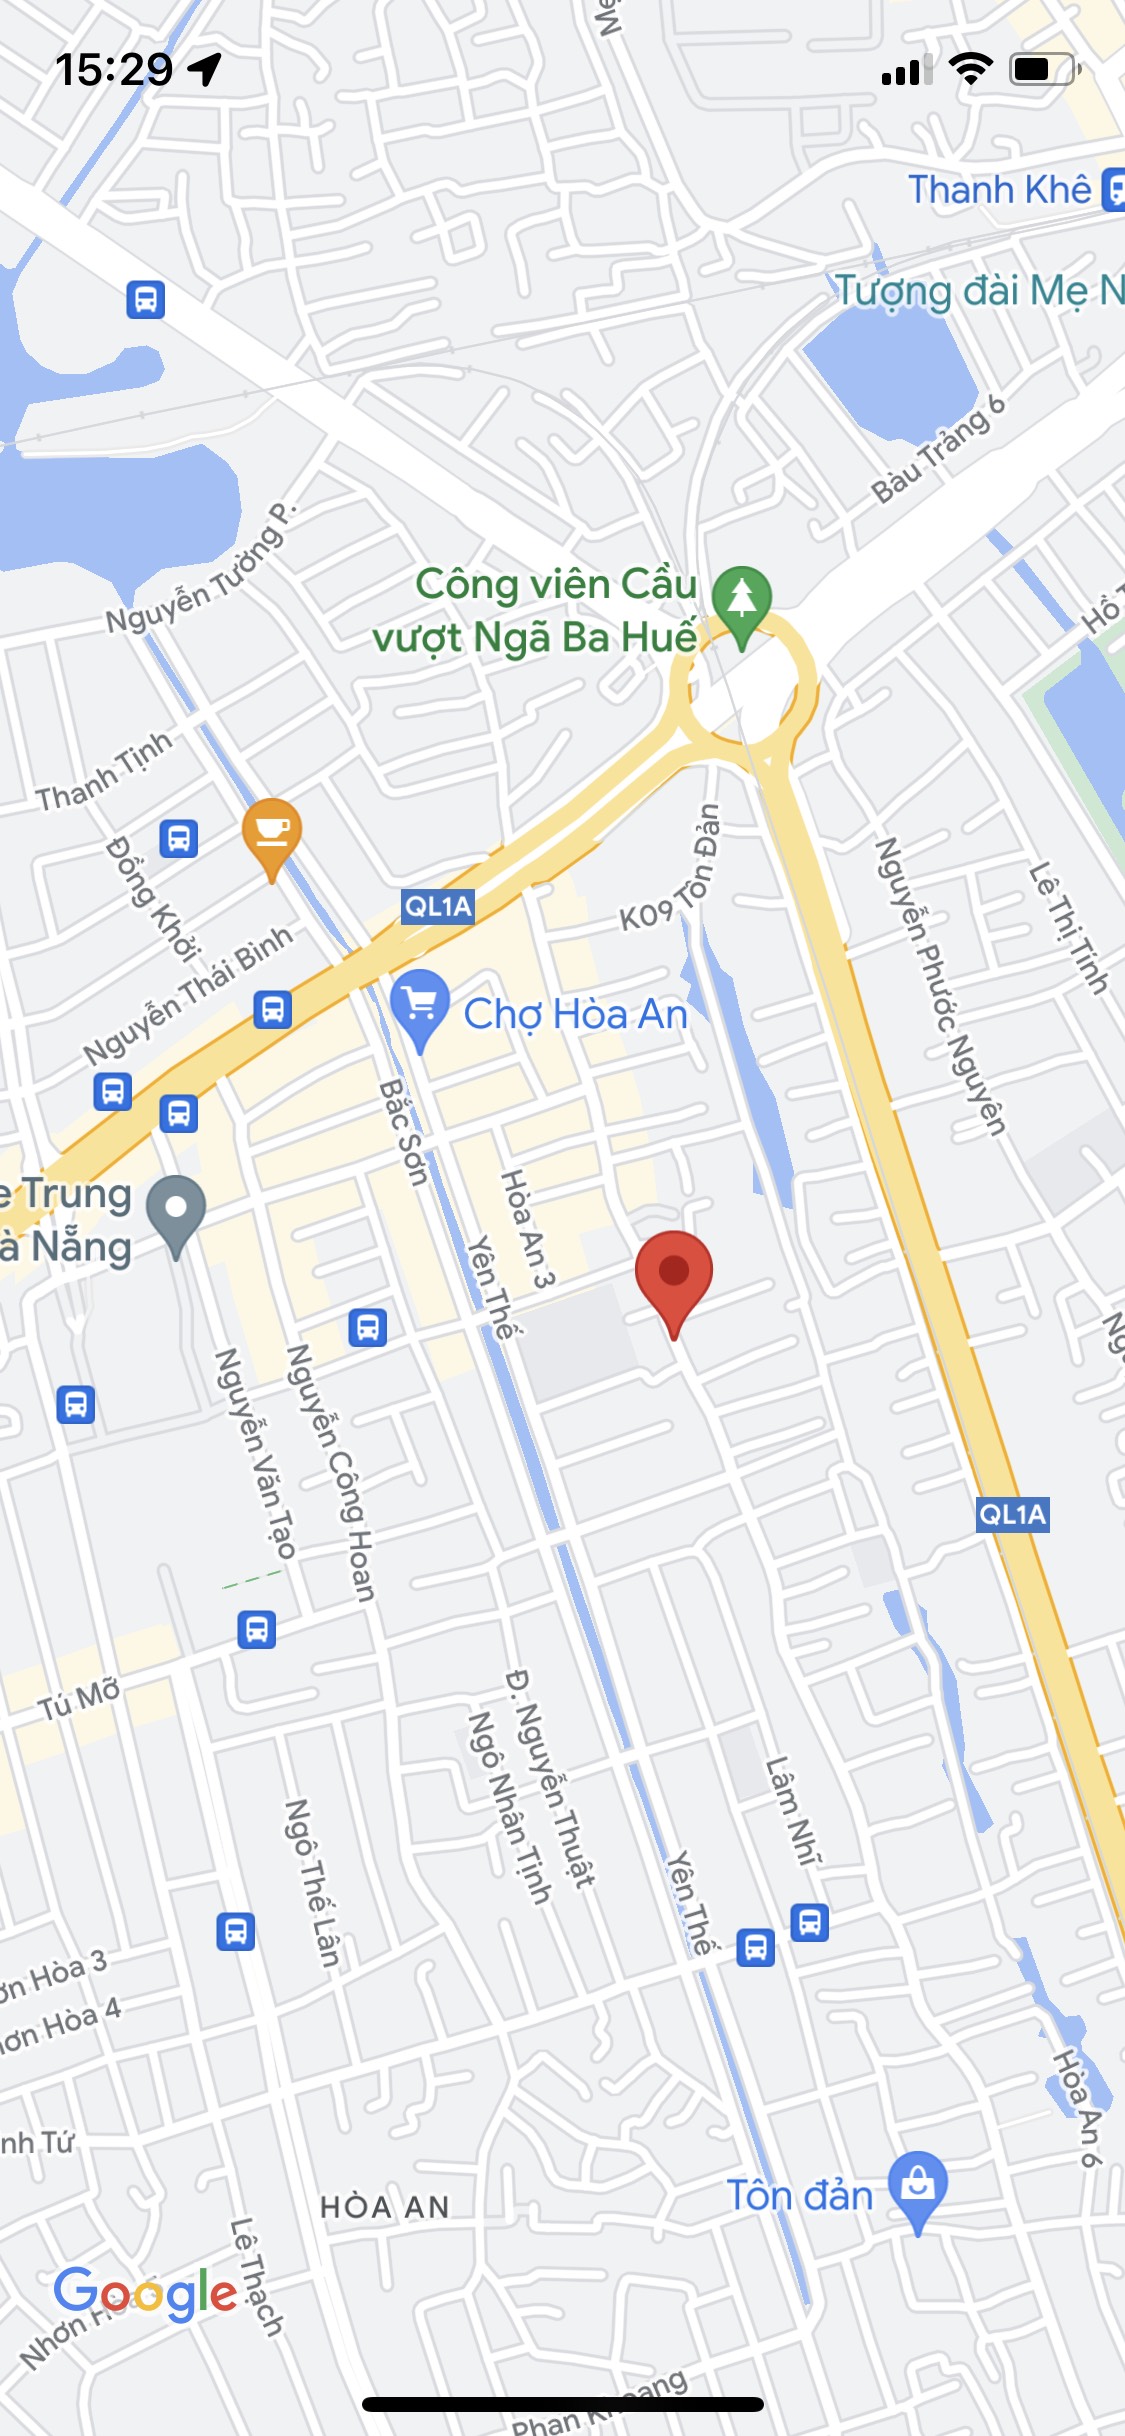 Bán nhà mặt tiền đường Tôn Đản, gần chợ Hòa An, bến xe Trung Tâm, khu sầm uất. Giá: 4 tỷ